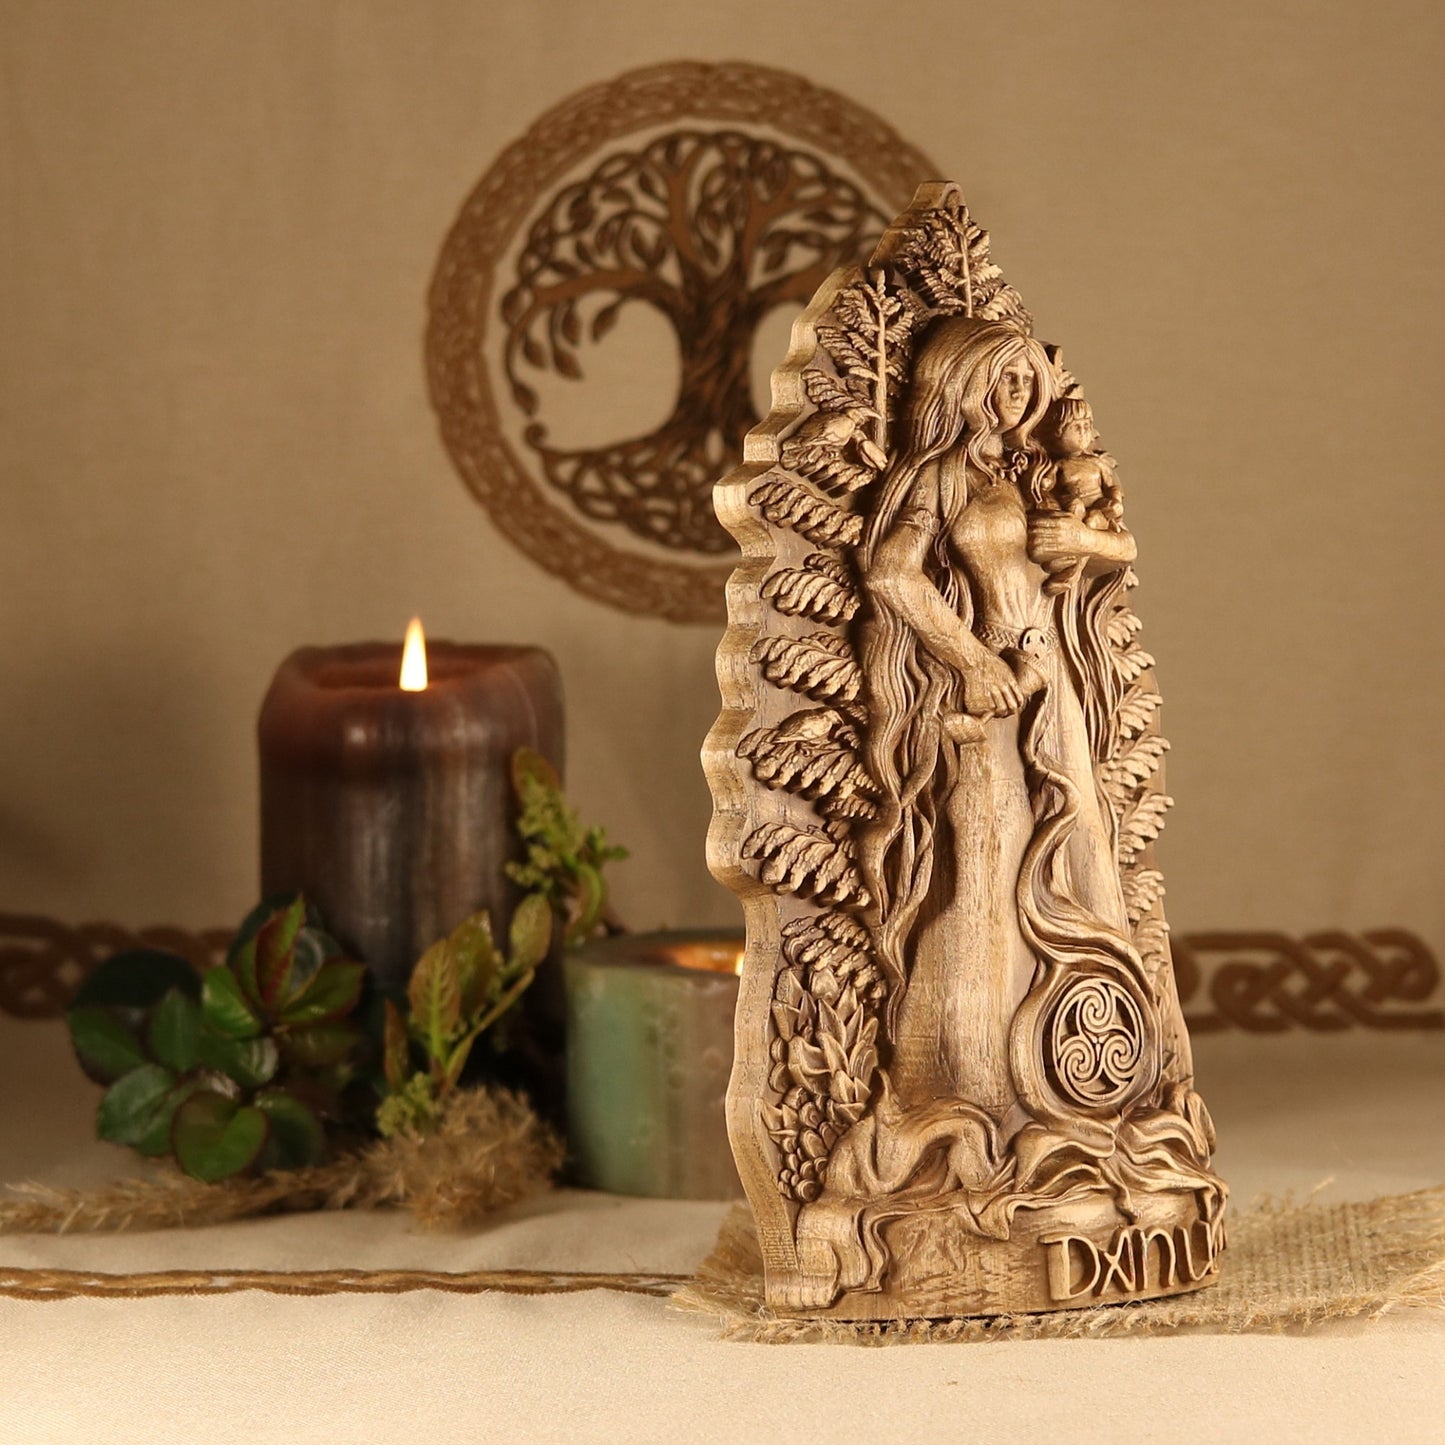 Wooden Danu Statue - Fertility Goddess Sculpture